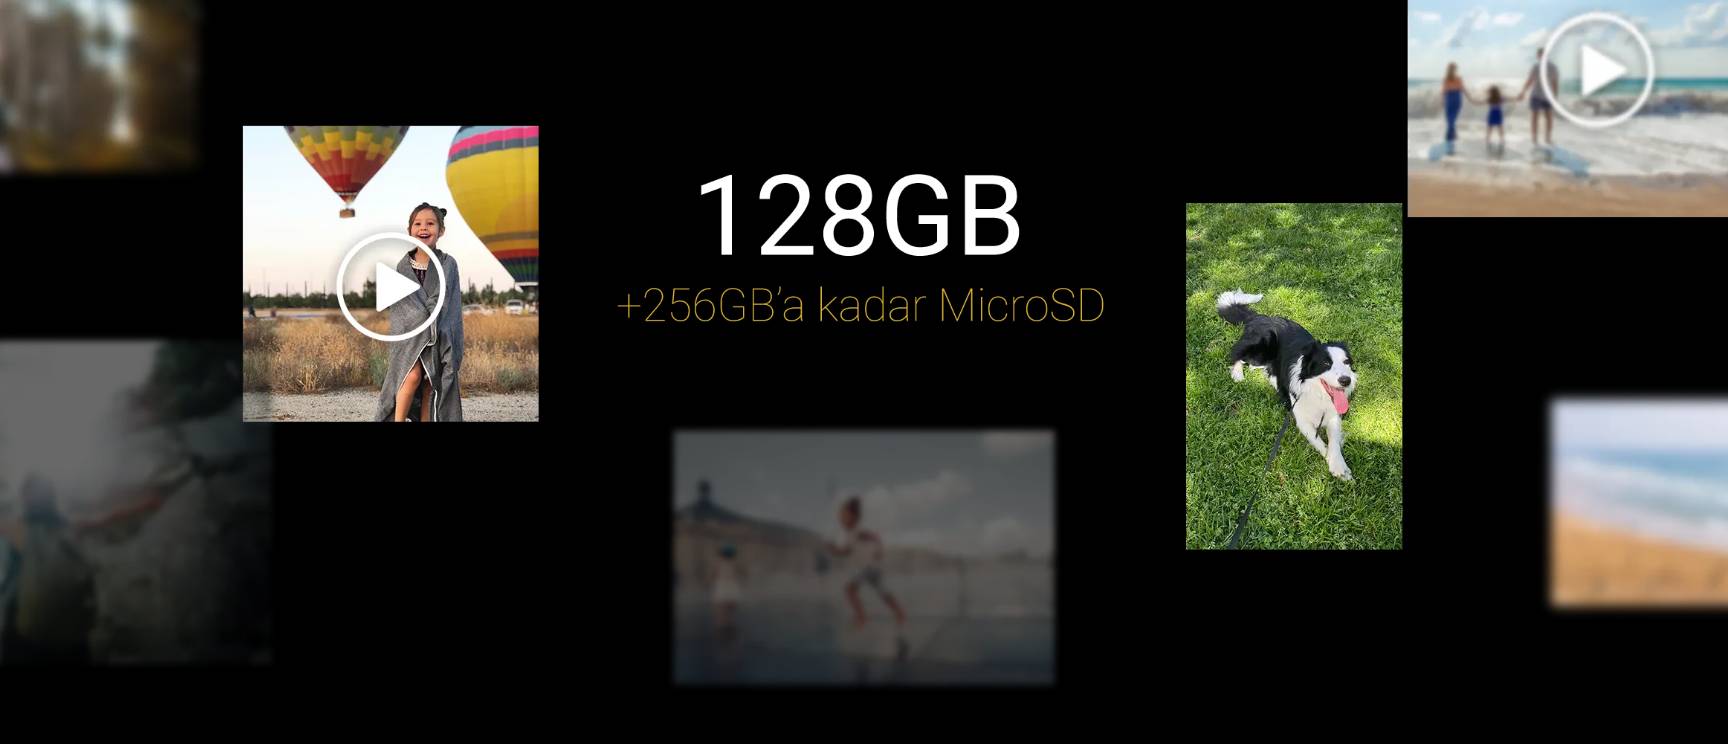 128GB dahili depolama, fotoğraf, video ve dosyalarınız için geniş alan sunuyor.